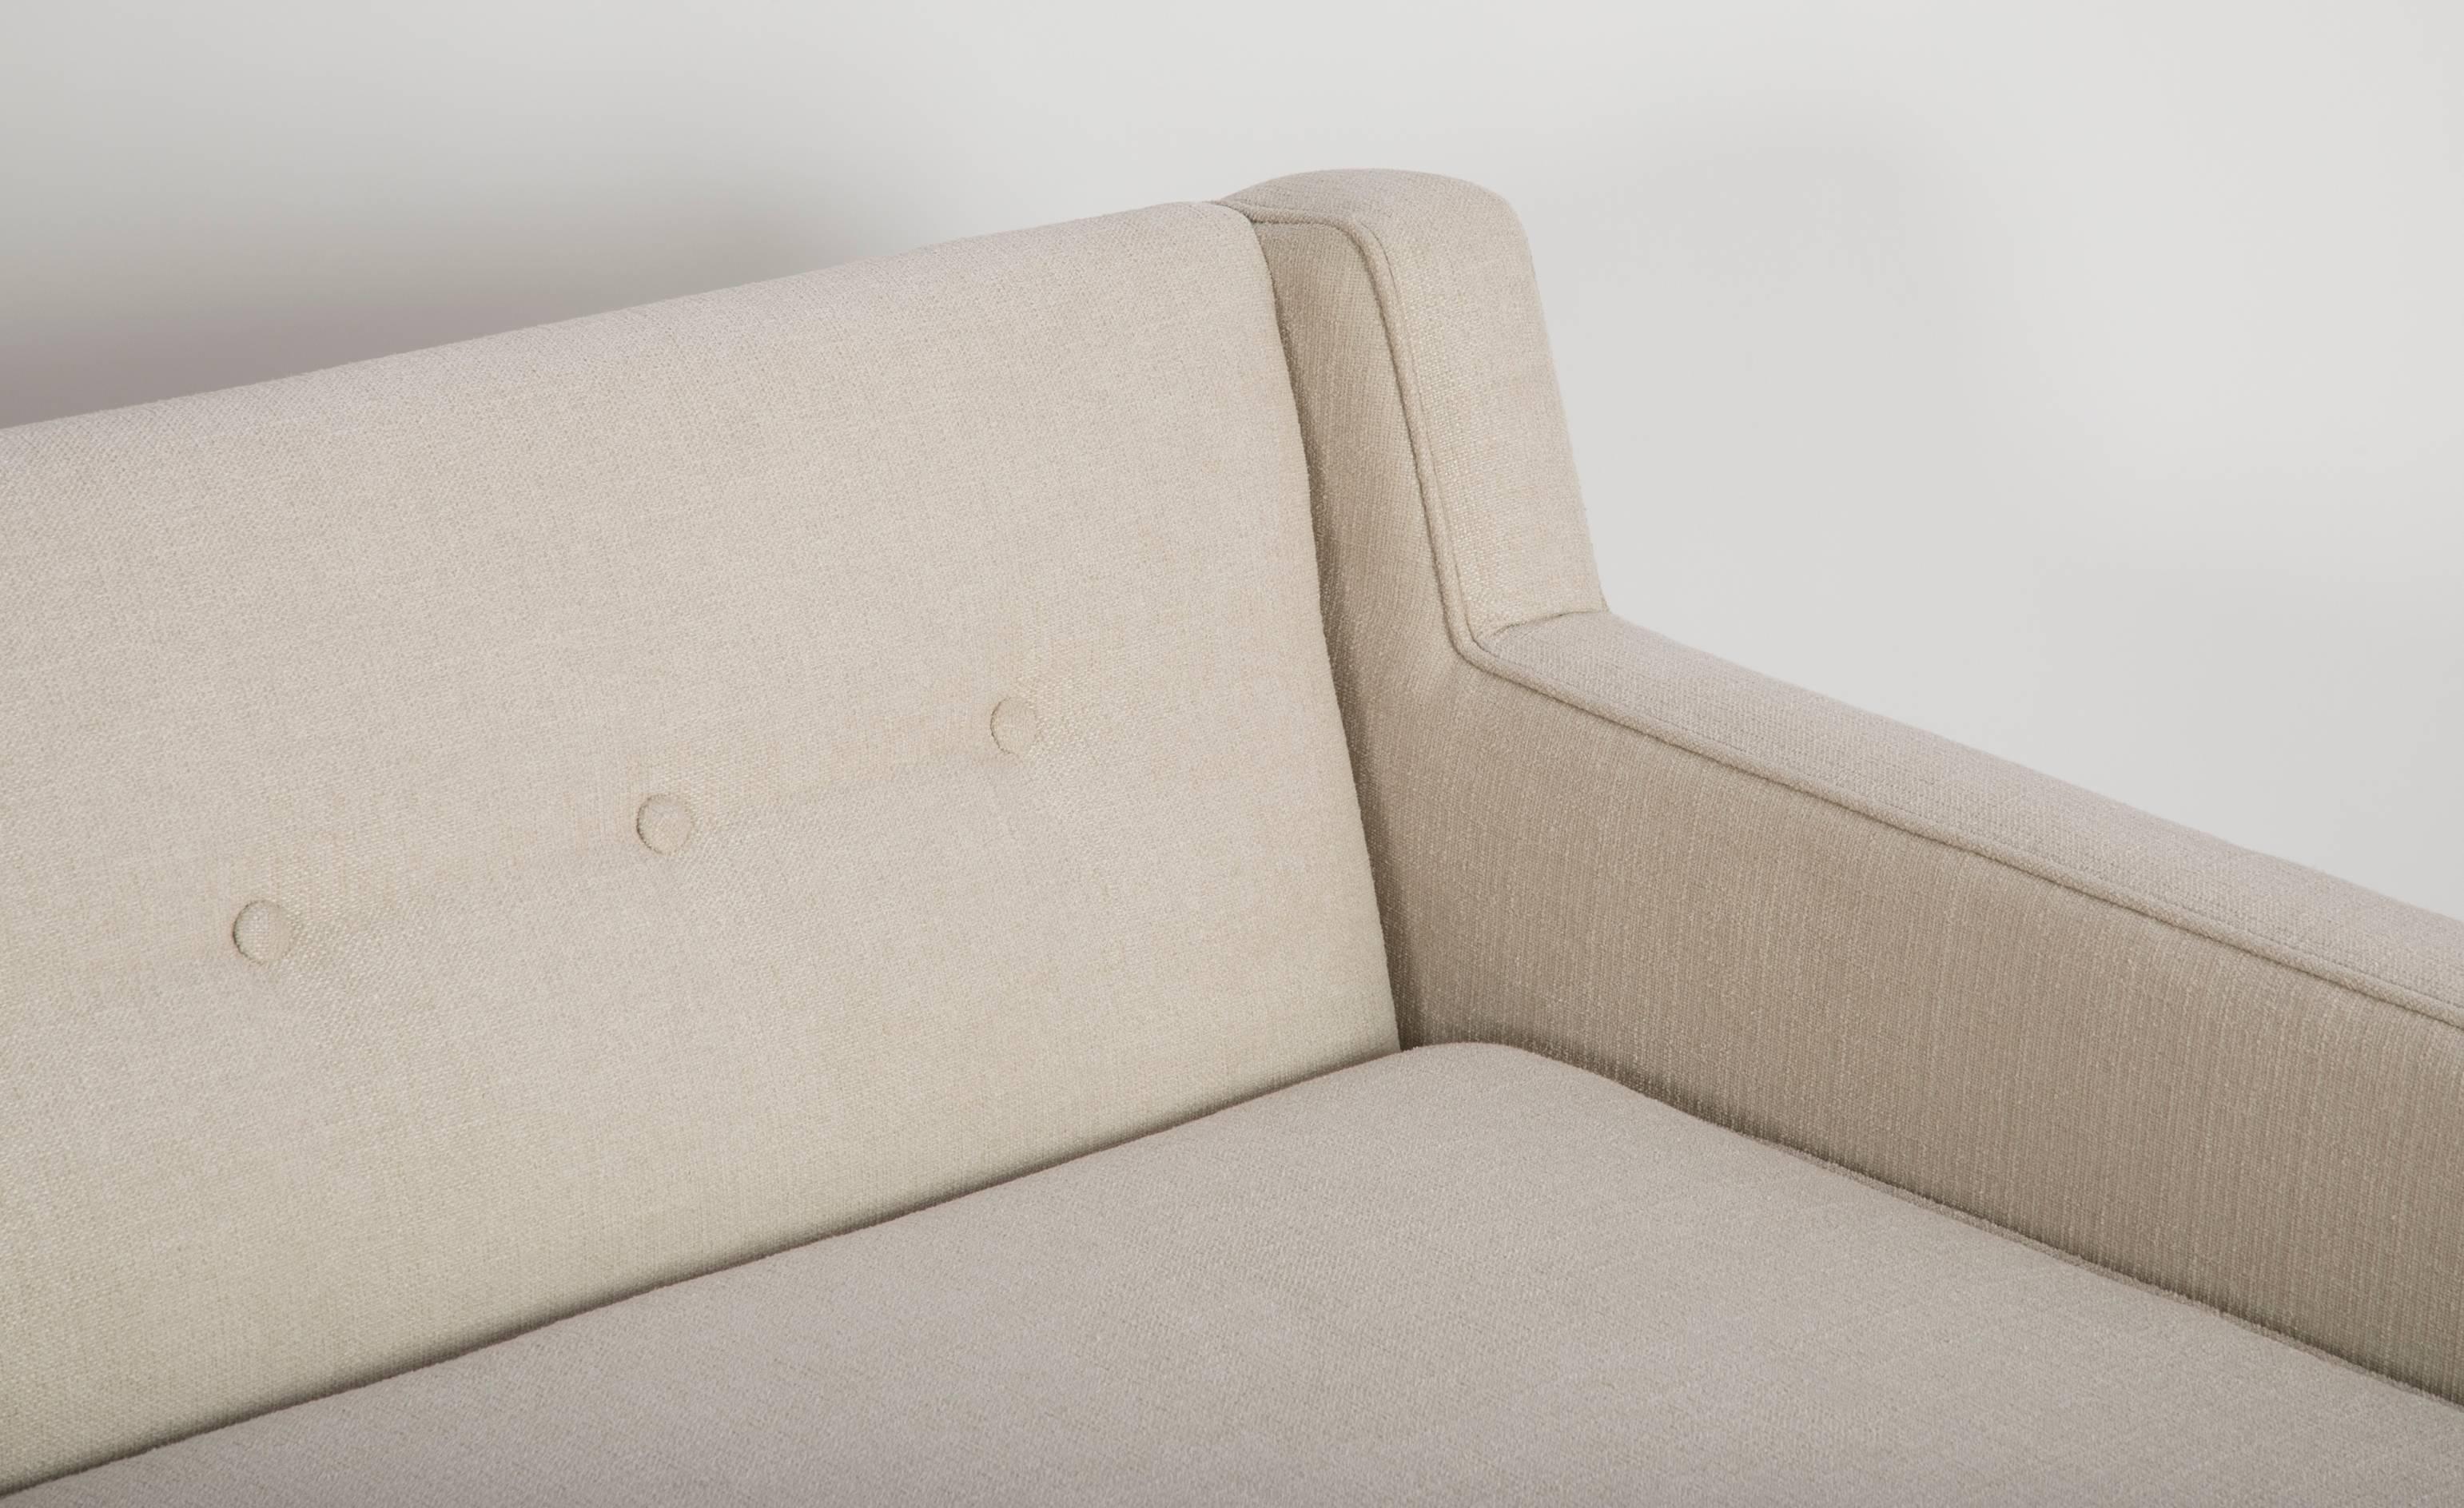 Sofa by Edward Wormley for Dunbar 1